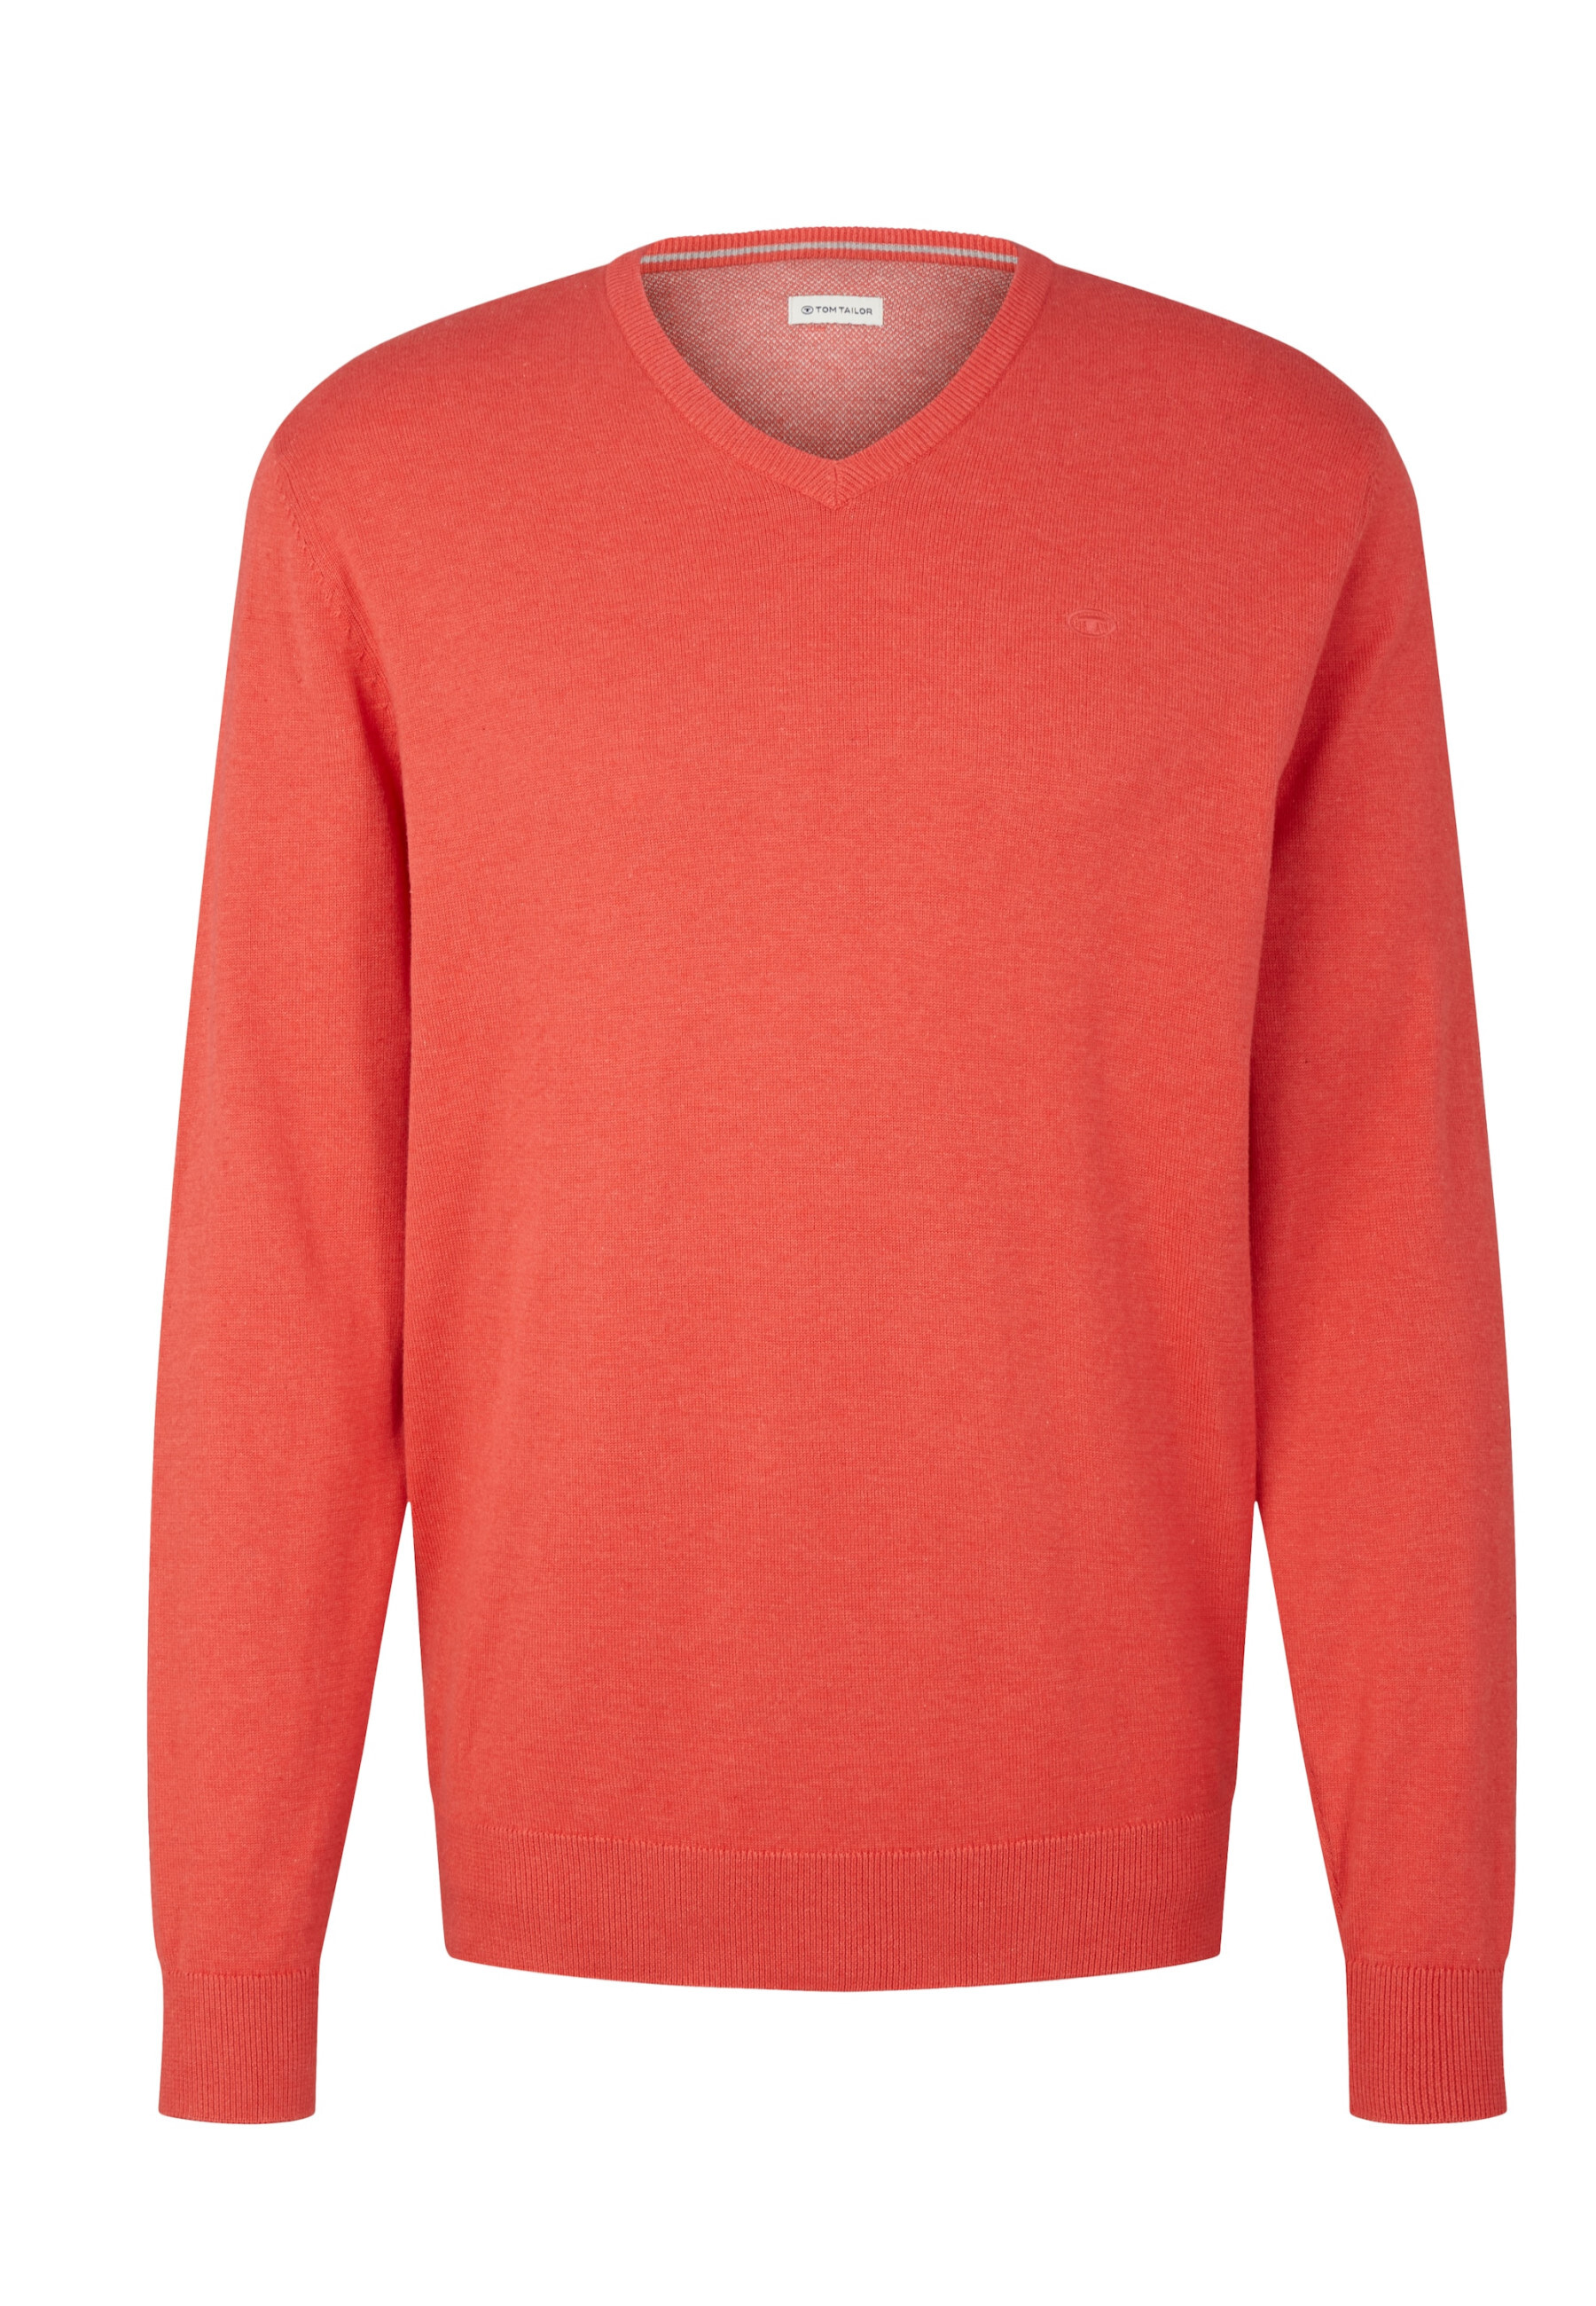 Пуловер Tom Tailor, красный пуловер tom tailor размер s красный